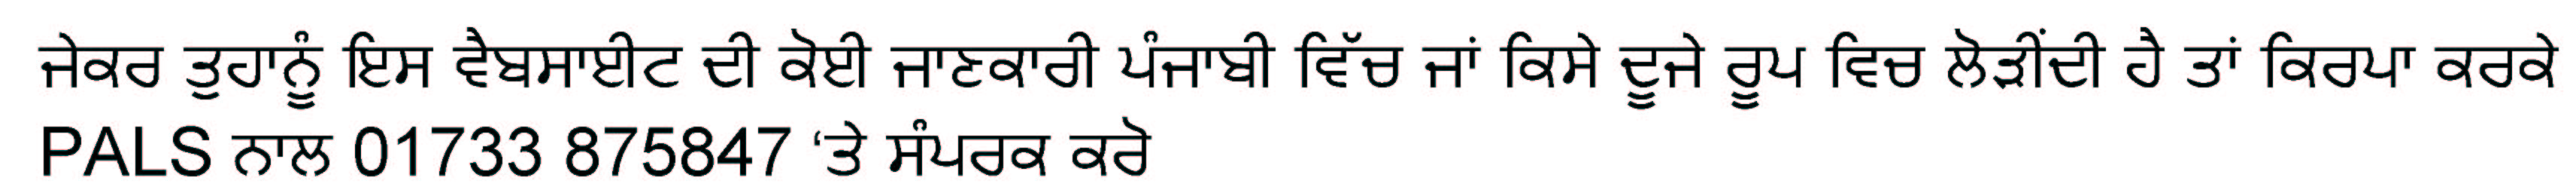 Punjabi translation